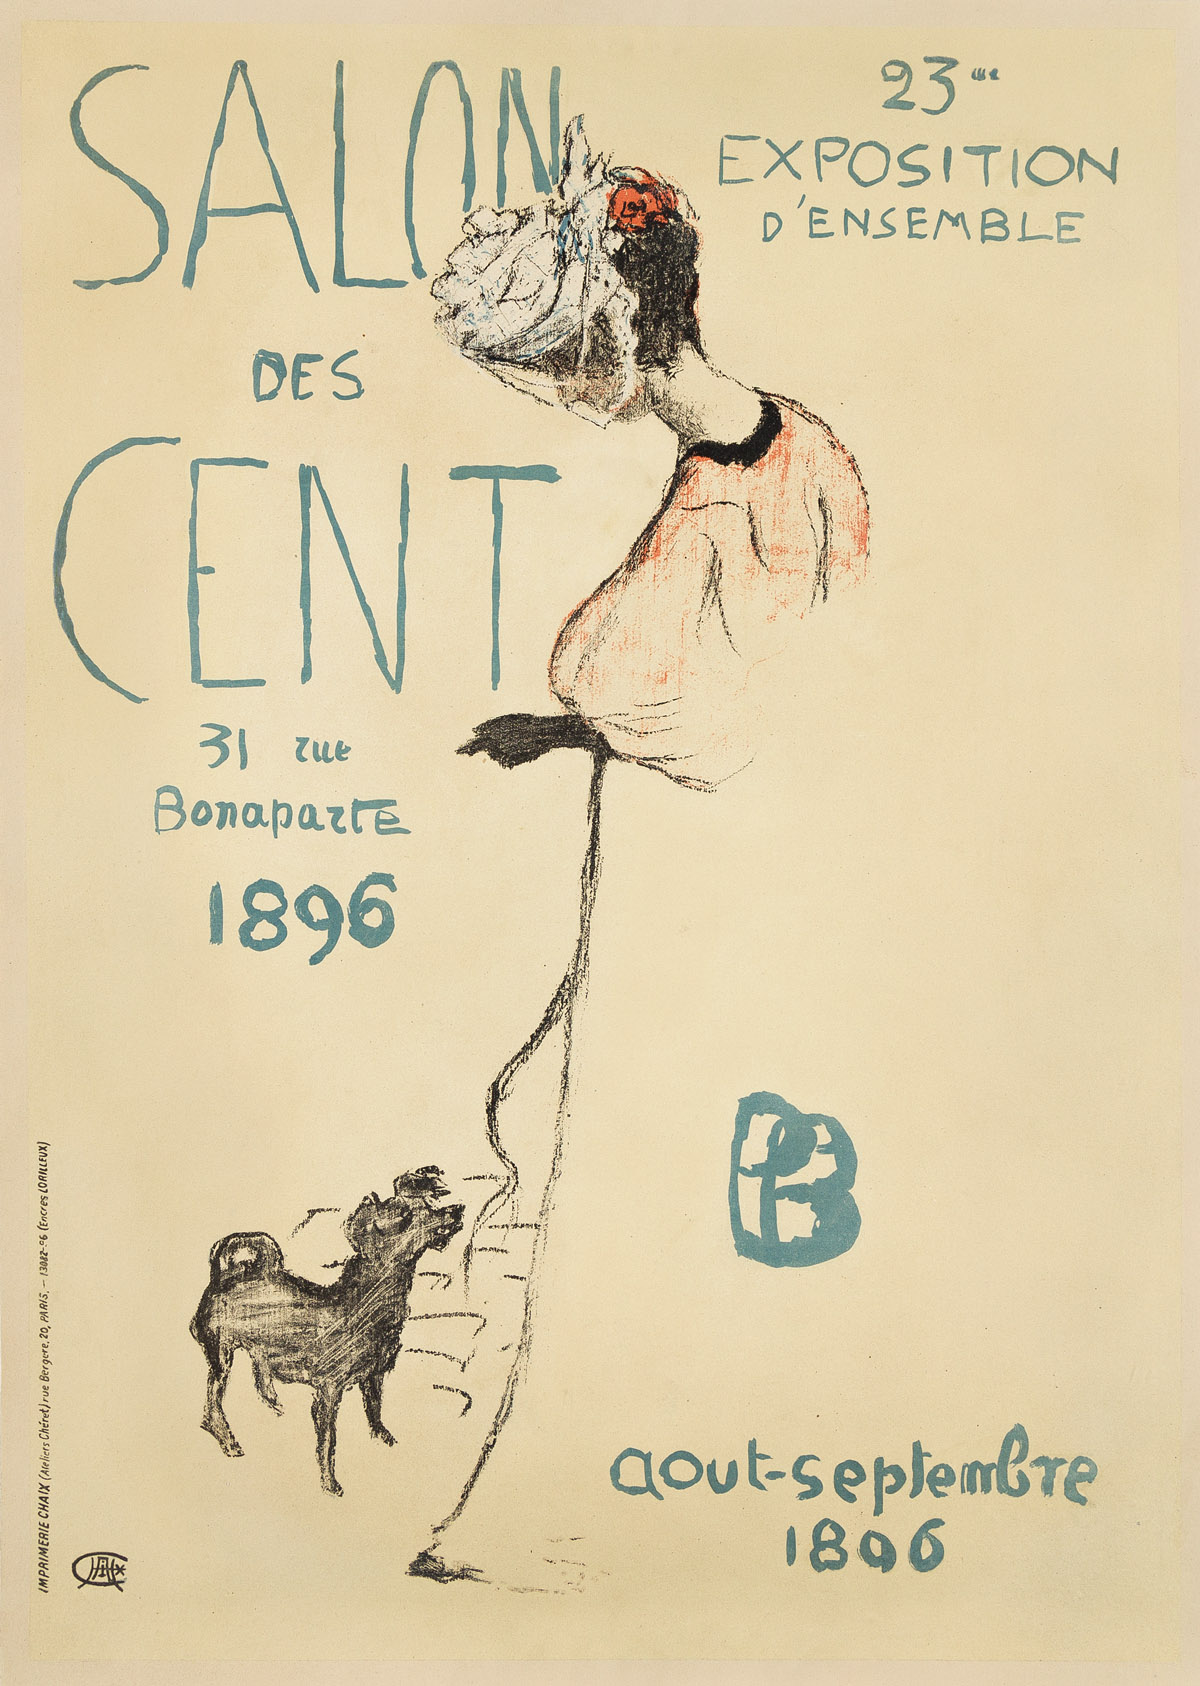 PIERRE BONNARD (1867-1947).  SALON DES CENTS. 1896. 24¼x17¼ inches, 61½x43¾ cm. Chaix, Paris.